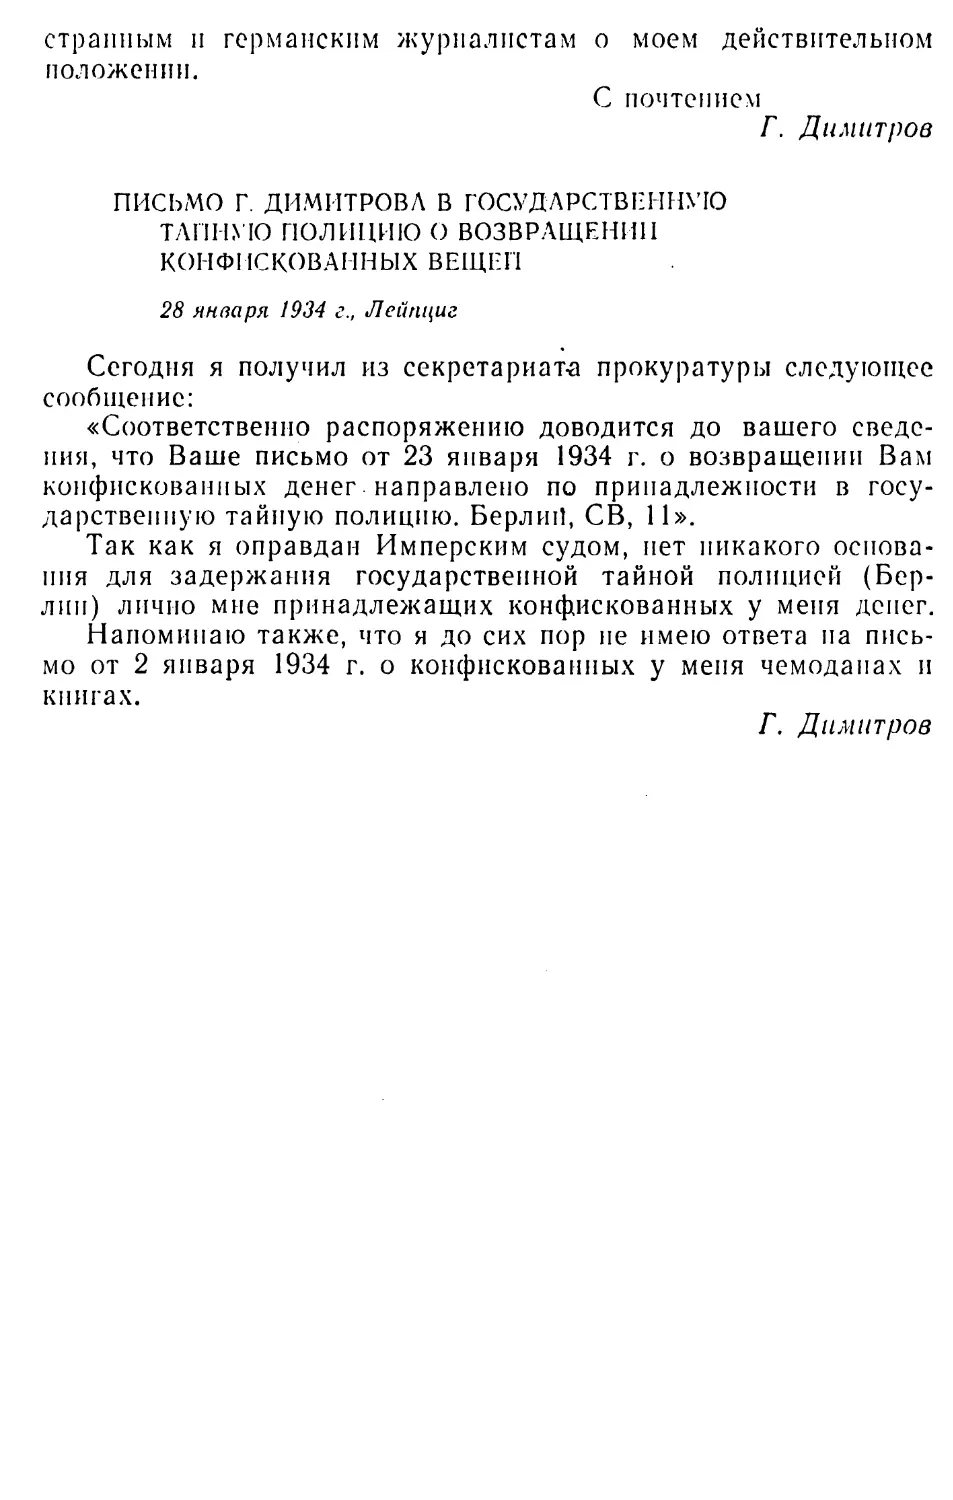 Письмо Г. Димитрова в государственную тайную полицию о возвращении конфискованных вещей. 28 января 1934 г